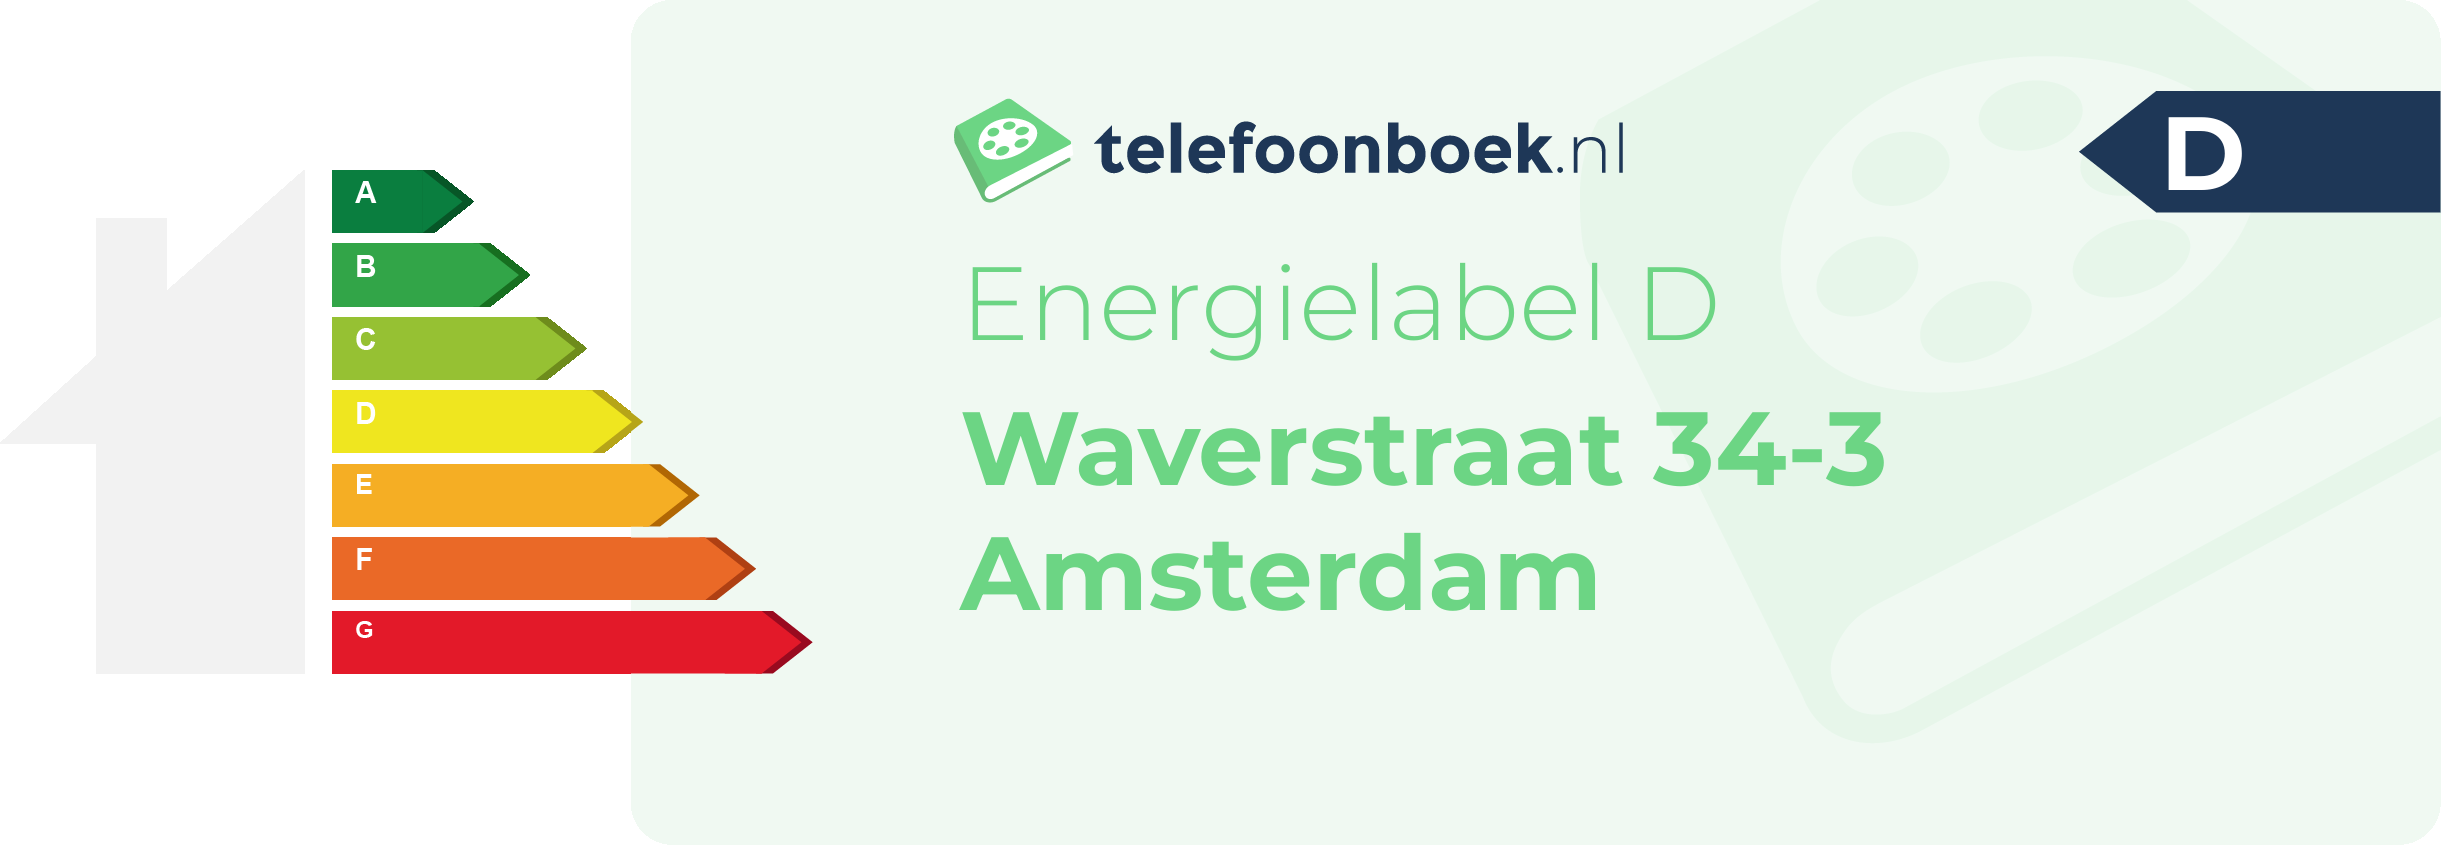 Energielabel Waverstraat 34-3 Amsterdam